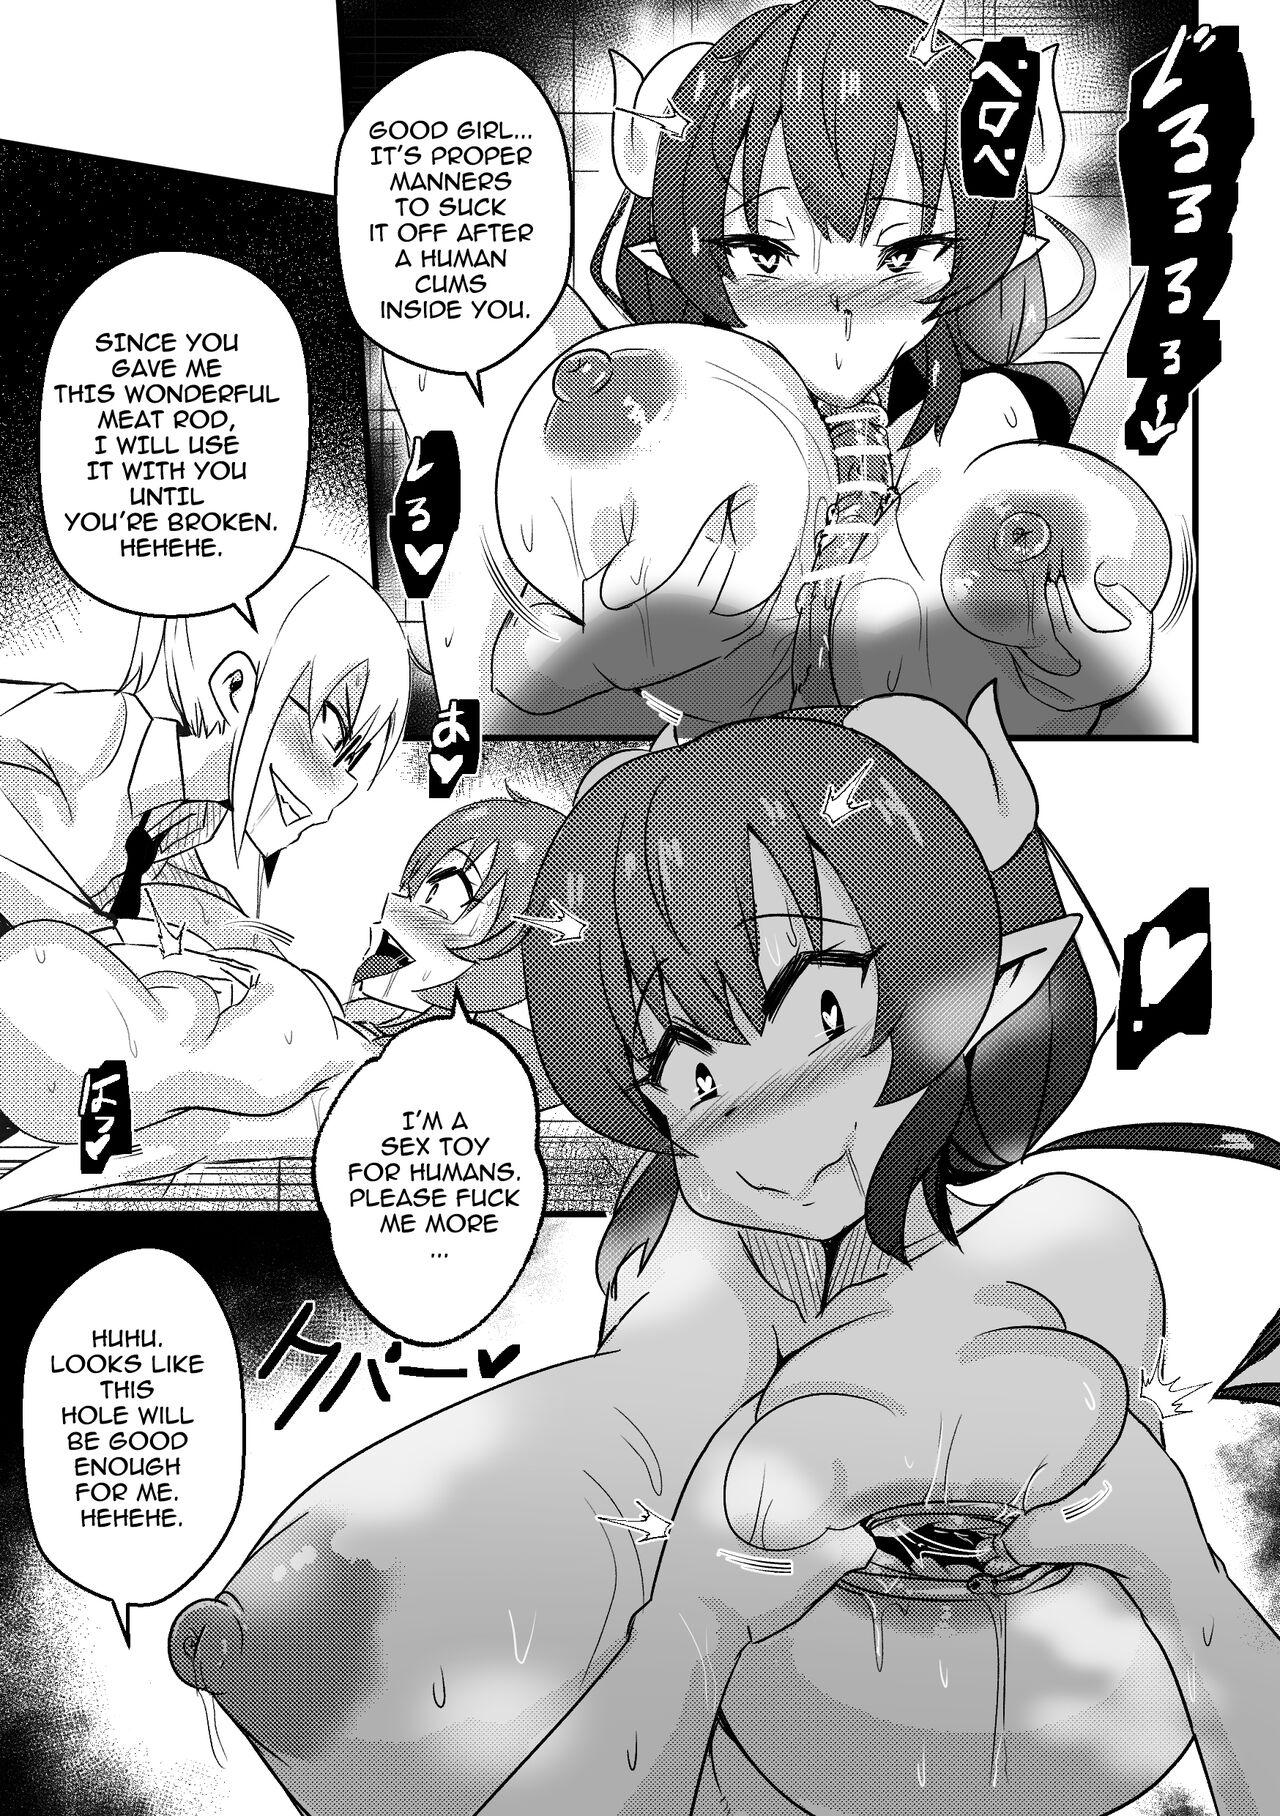 Rebolando [Merkonig] ILULU WA MAKETA (Censored) EN - Kobayashi san chi no maid dragon Brunette - Page 12